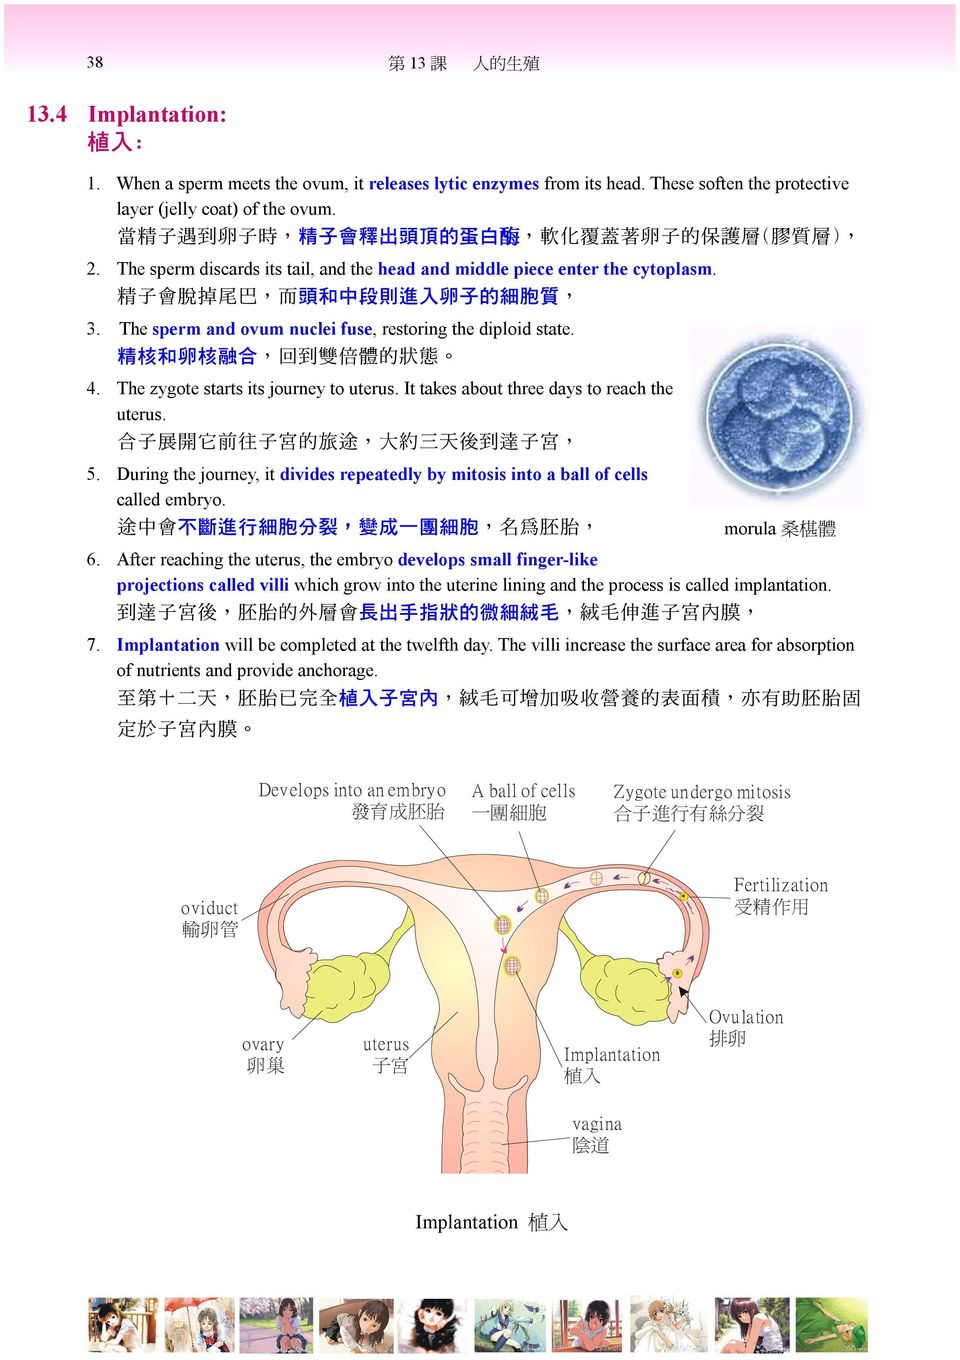 精 子 會 脫 掉 尾 巴, 而 頭 和 中 段 則 進 入 卵 子 的 細 胞 質, 3. The sperm and ovum nuclei fuse, restoring the diploid state. 精 核 和 卵 核 融 合, 回 到 雙 倍 體 的 狀 態 4. The zygote starts its journey to uterus.